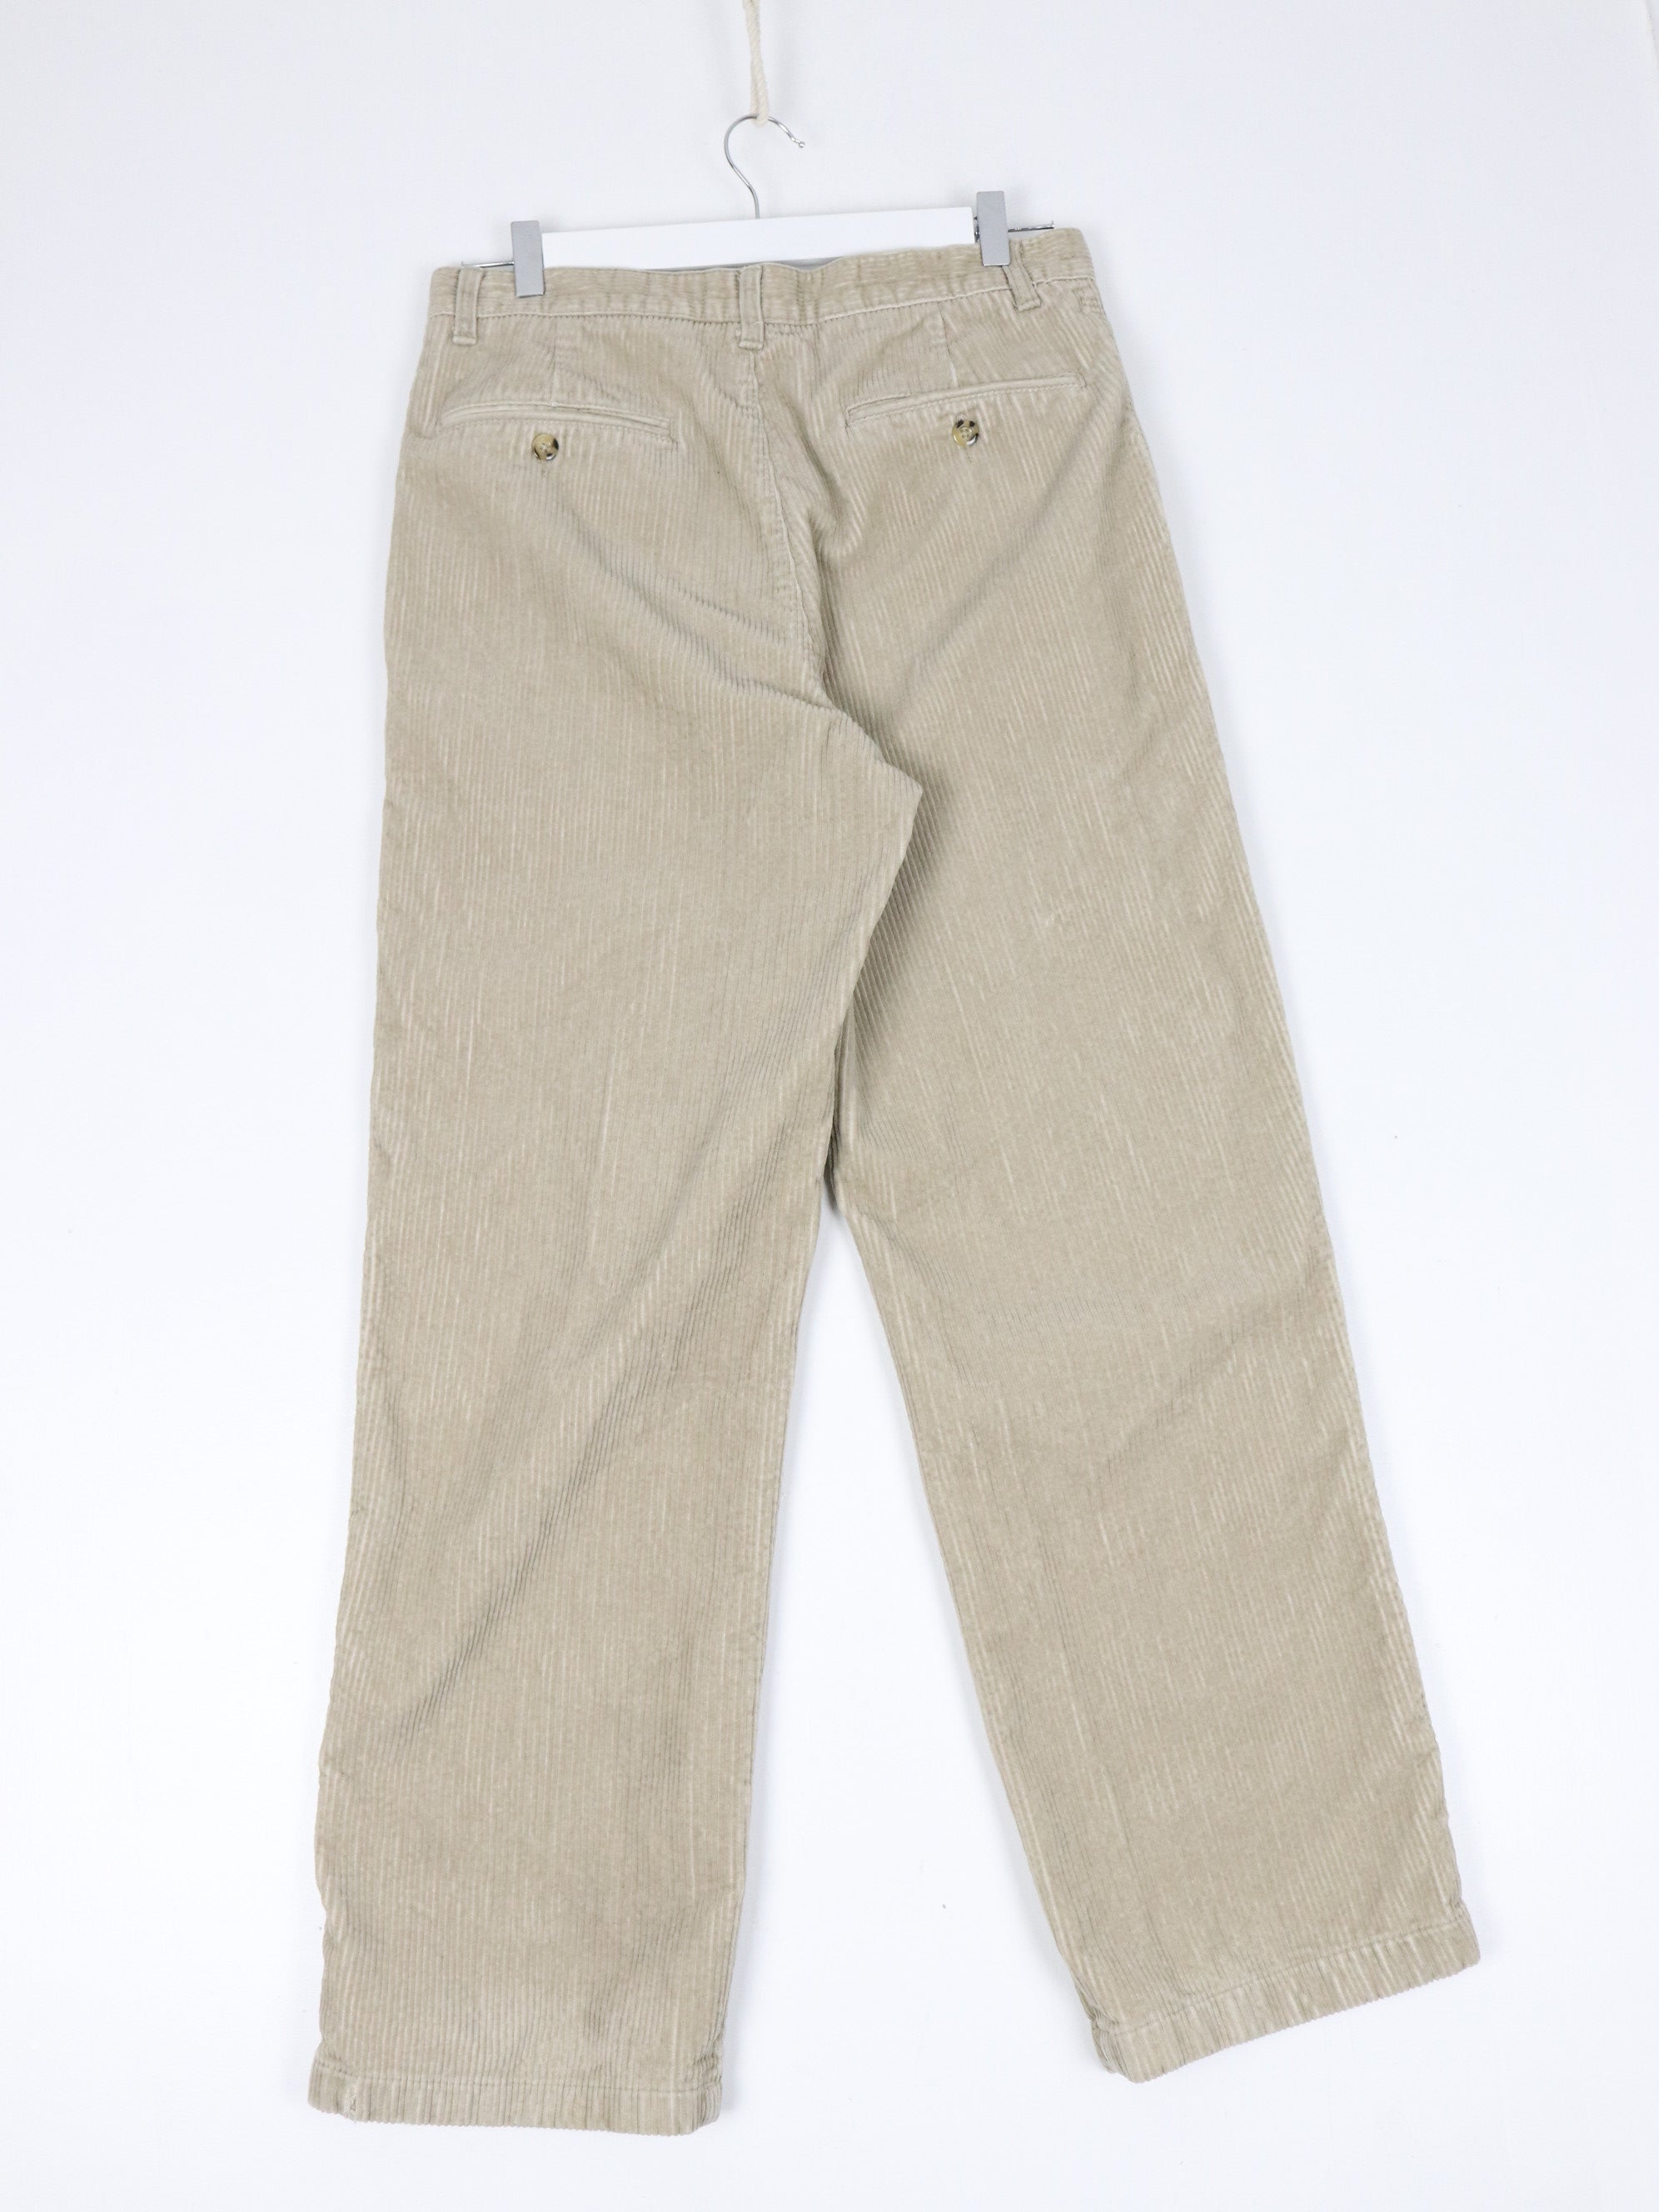 Cherokee Pants Mens 32 x 30 Beige Corduroy Trousers – Proper Vintage